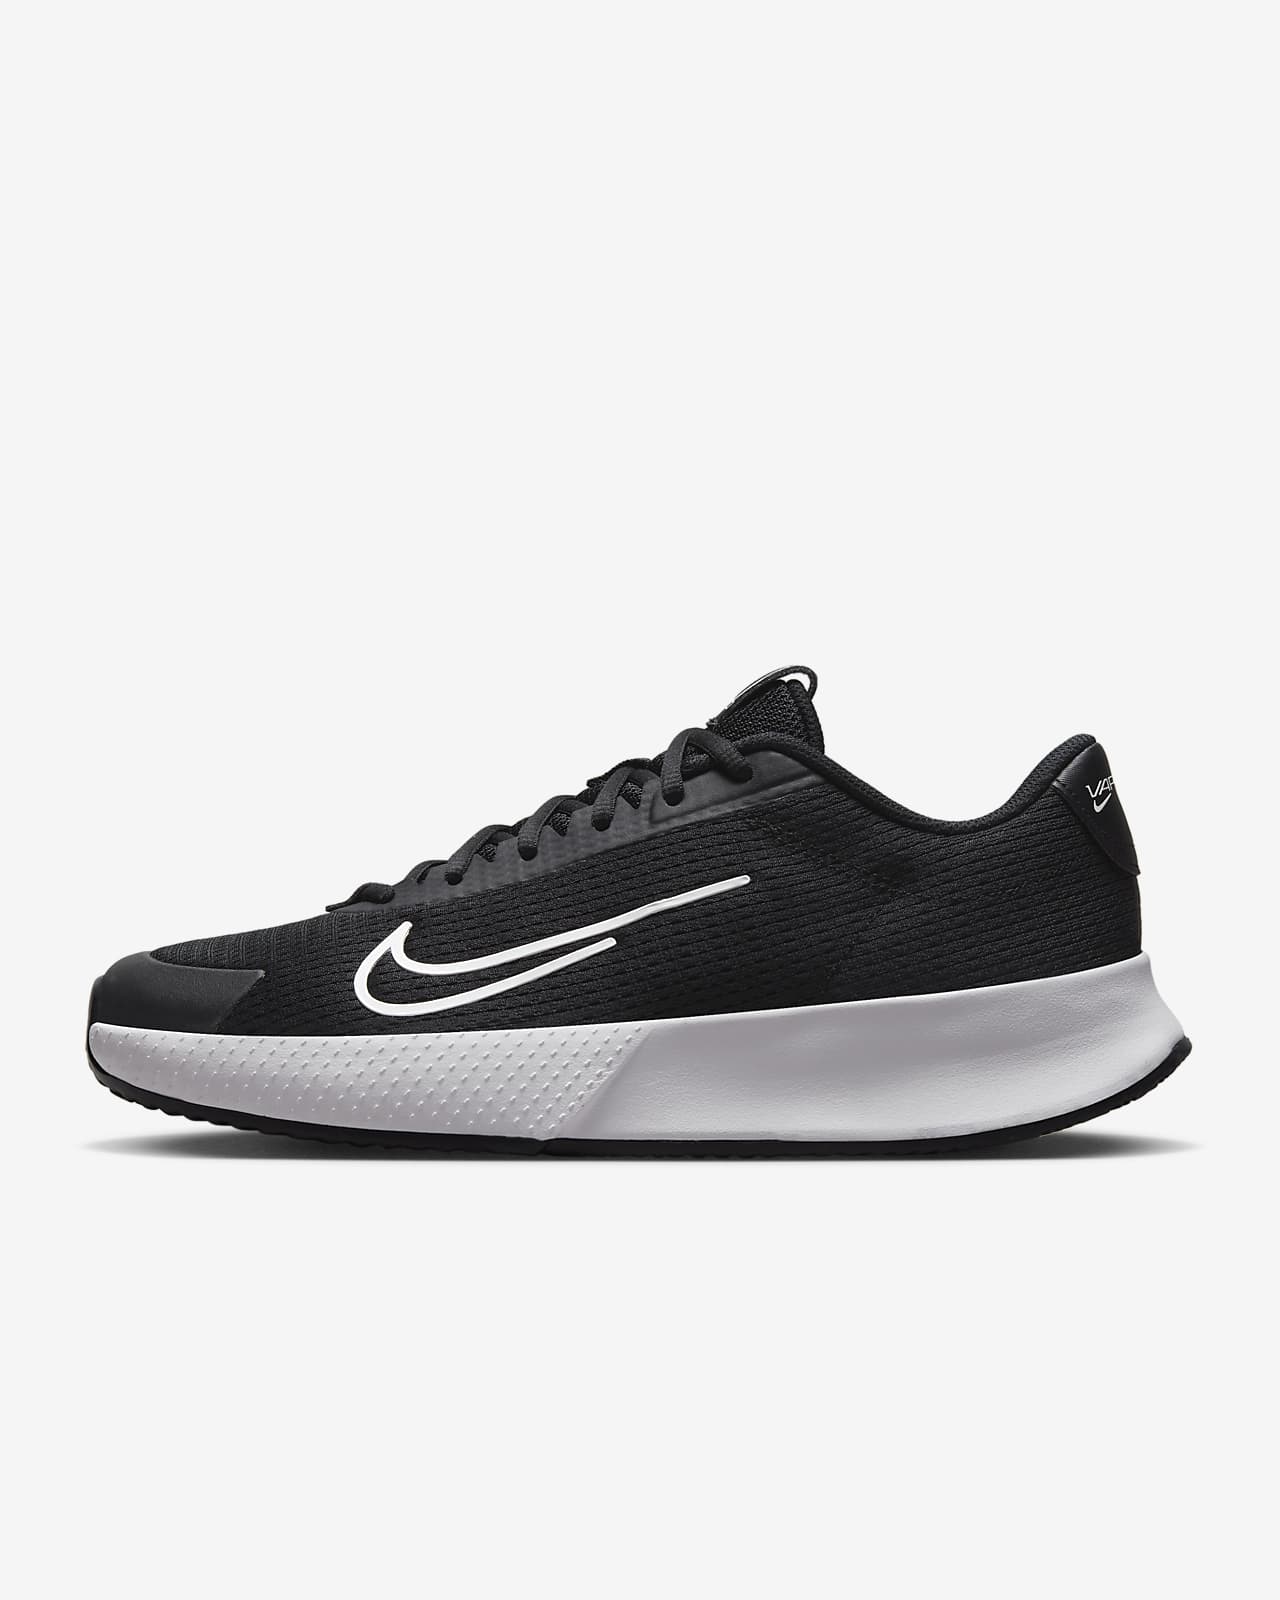 NikeCourt Vapor Lite 2 Toprak Kort Erkek Tenis Ayakkabısı